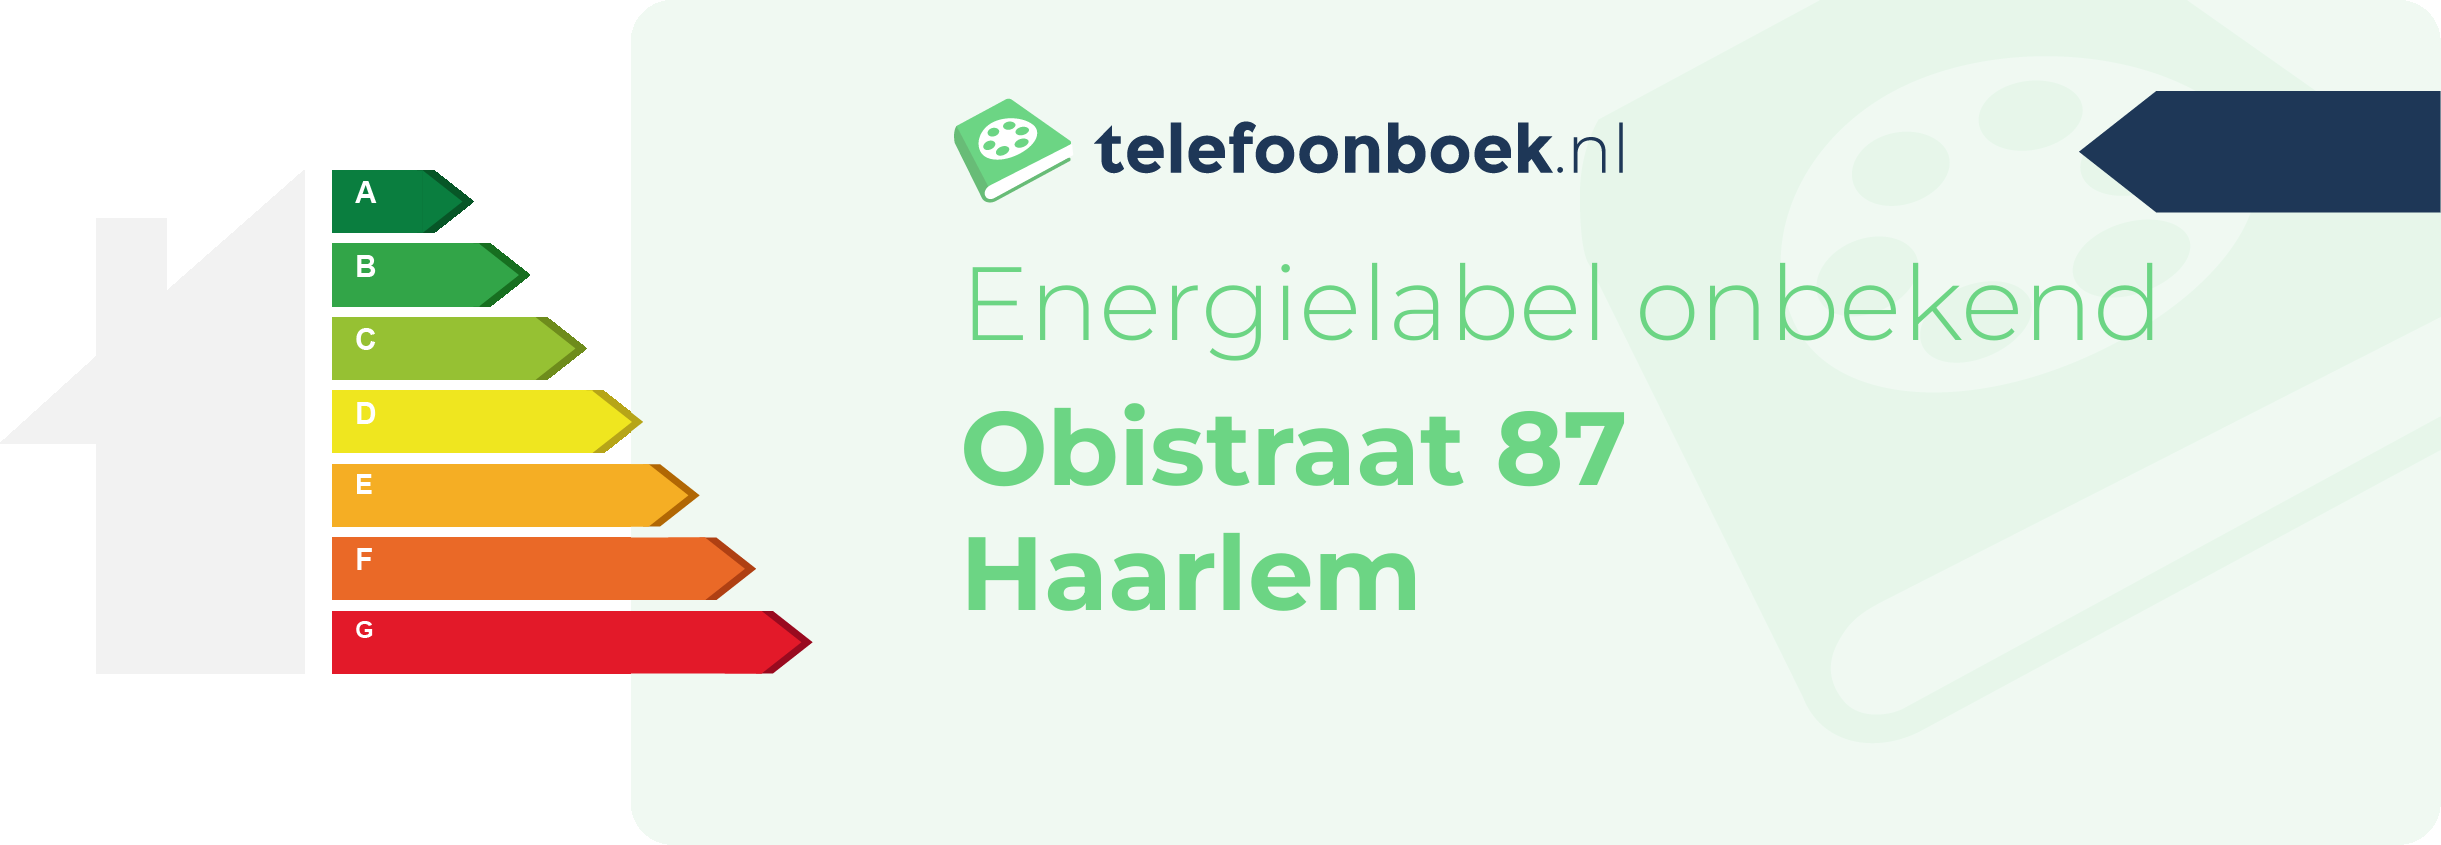 Energielabel Obistraat 87 Haarlem